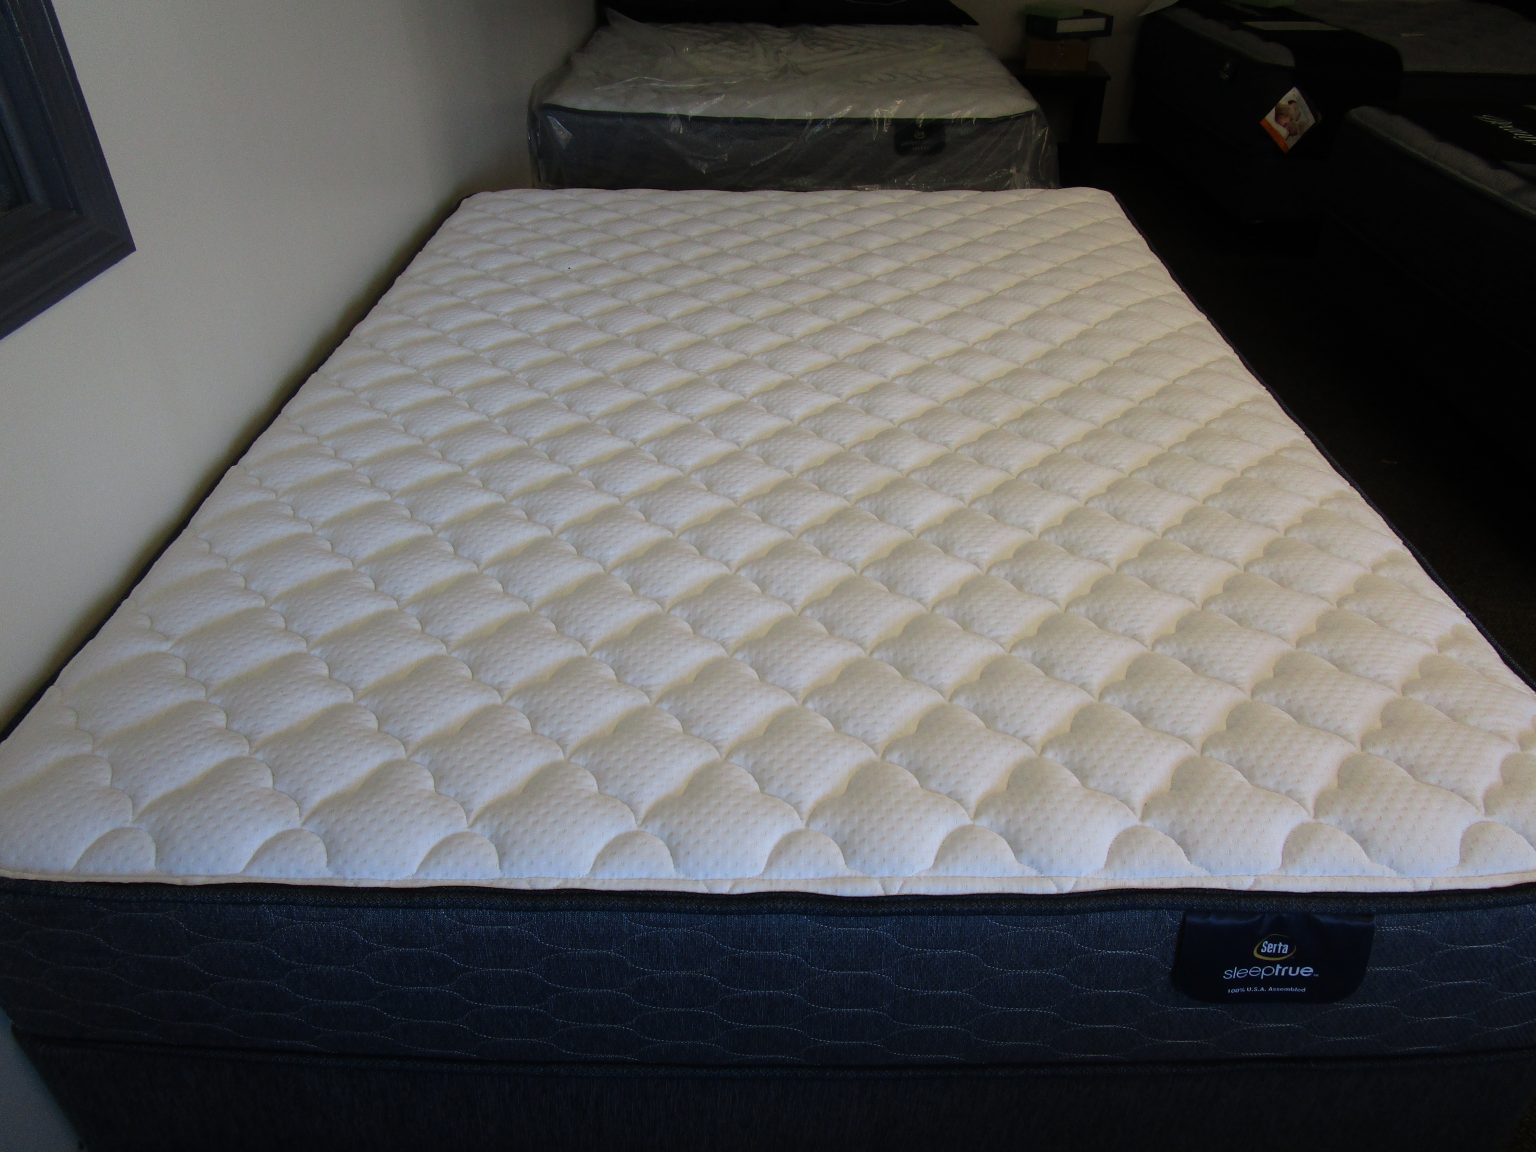 serta luxury mattress with cooling technology